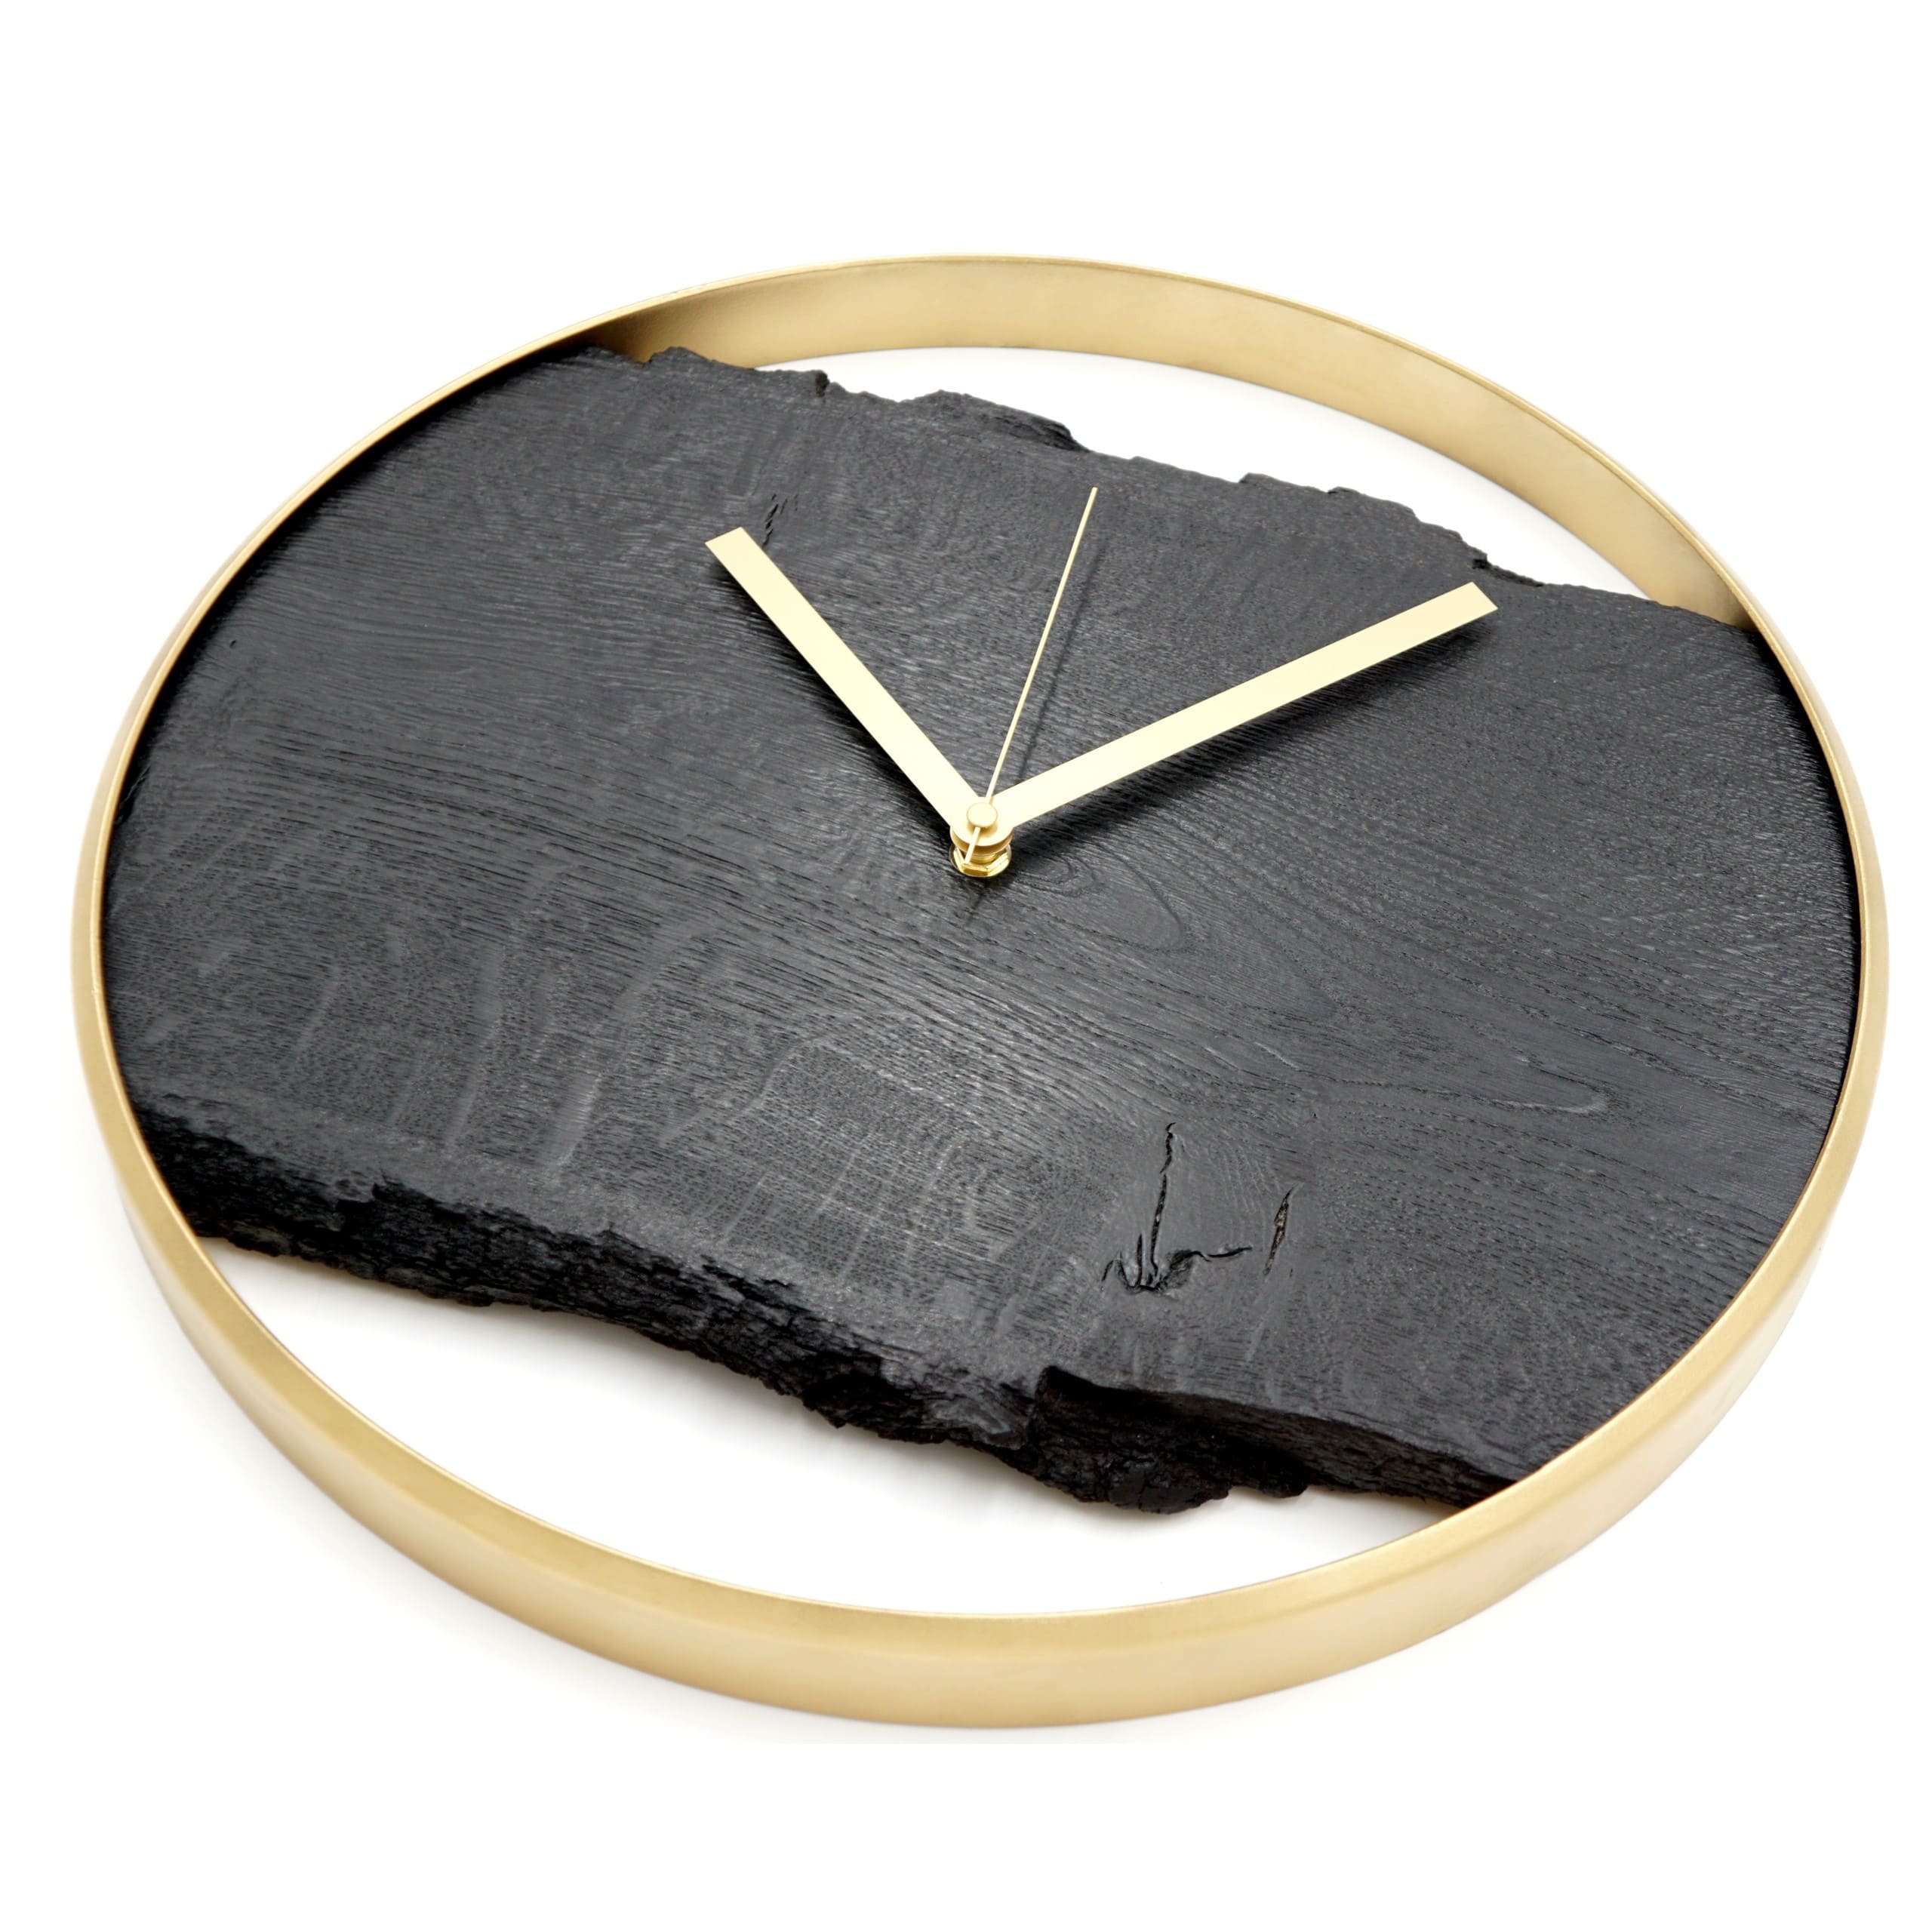 Wanduhr aus Eiche 'Nero' schwarz mit Metallring, lautlosem Uhrwerk modern Gold-Edition mit rotem Sekundenzeiger Draufsicht